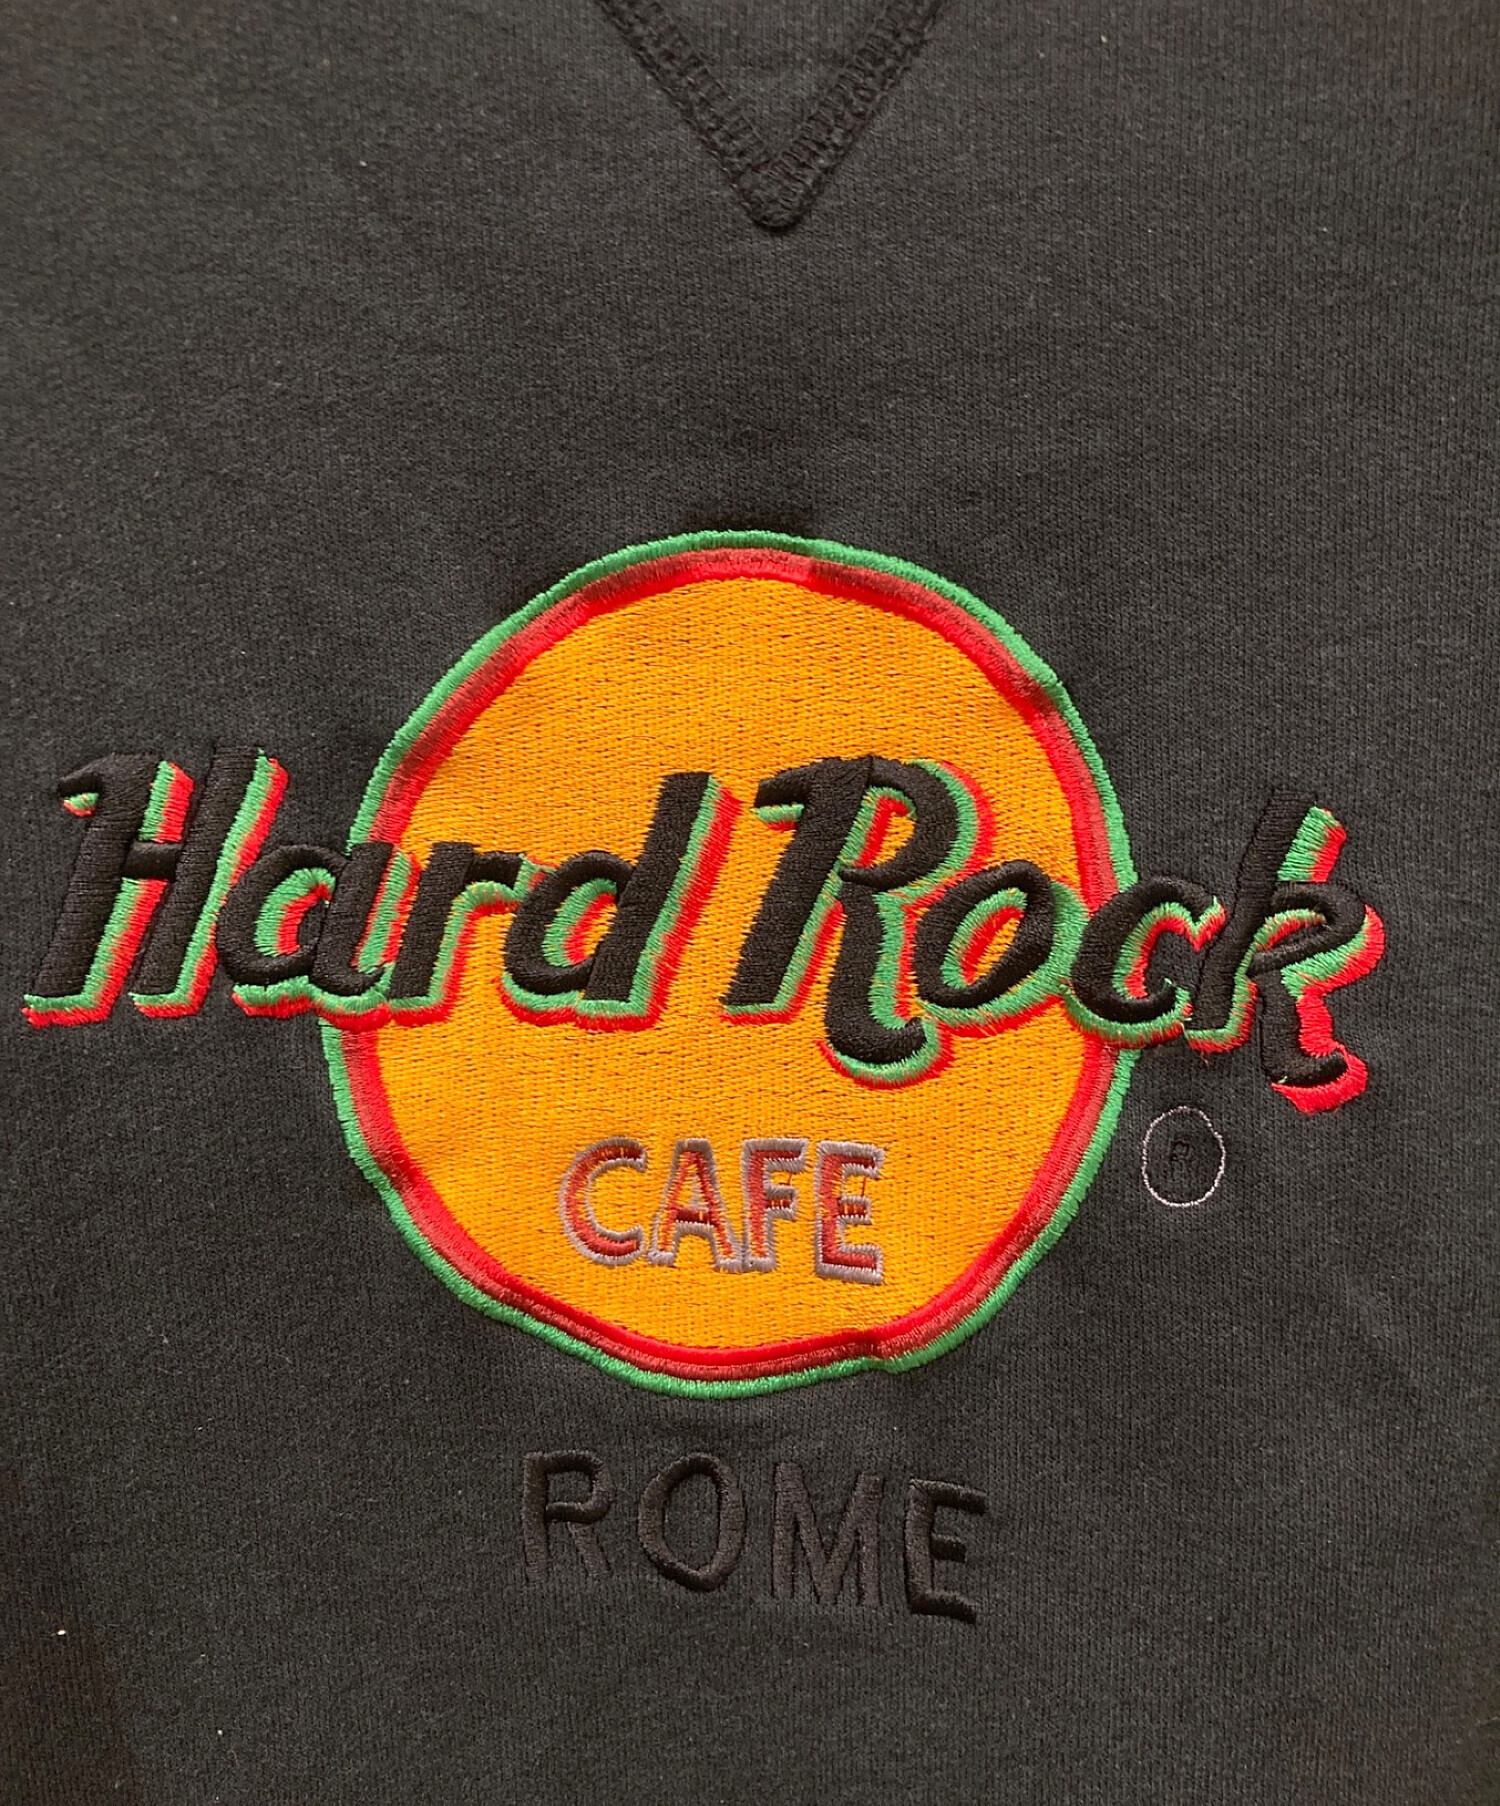 Hard Rock cafe (ハードロックカフェ) 【古着】刺繍スウェット ブラック サイズ:L